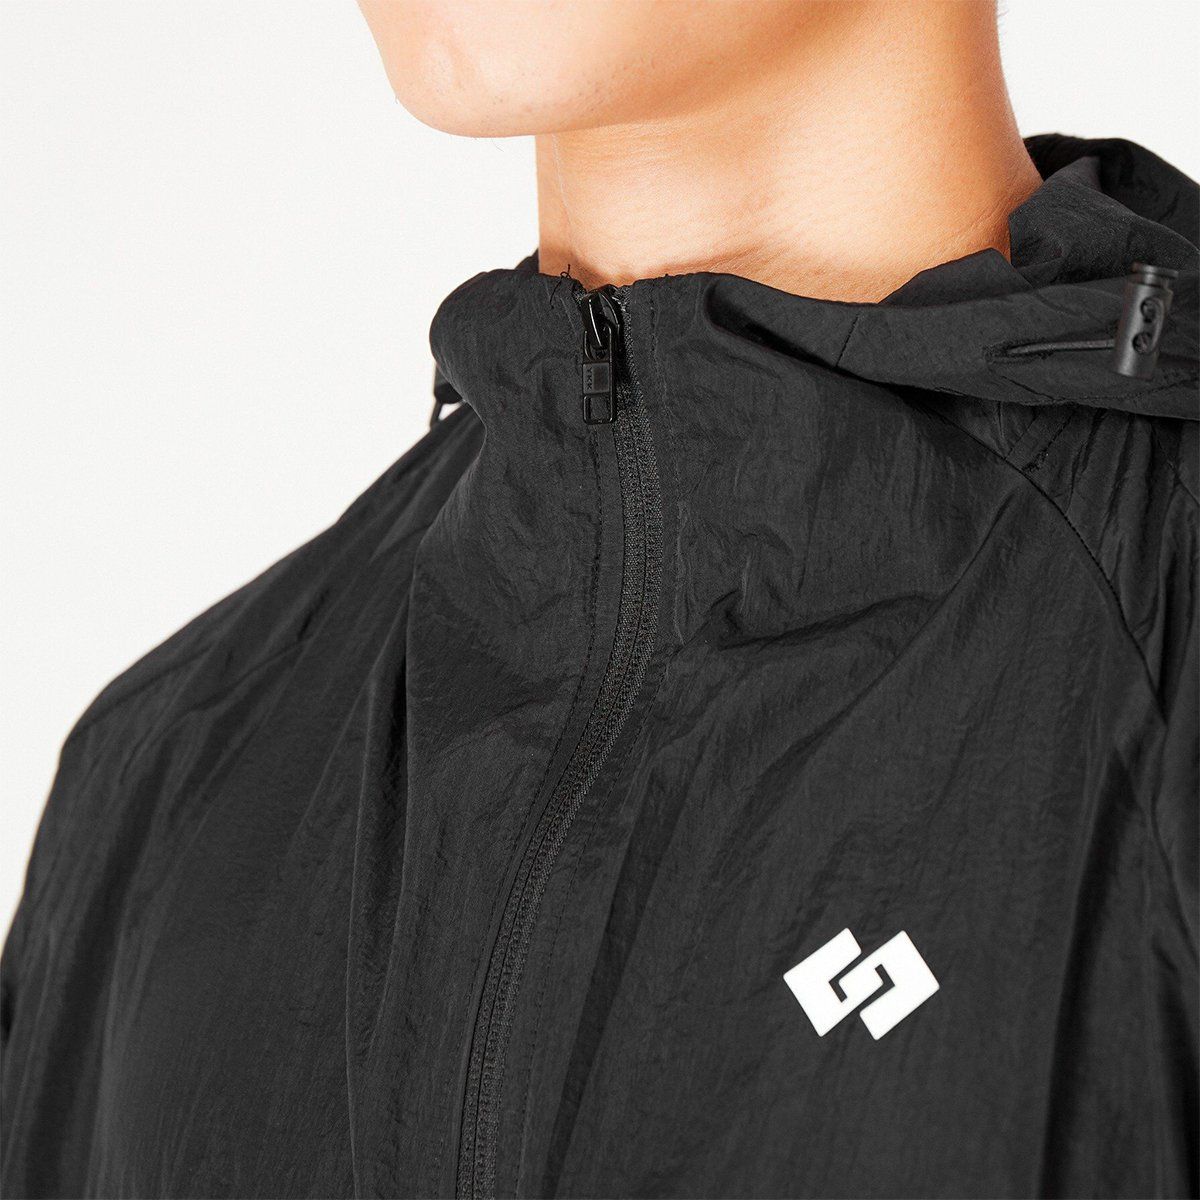  Áo khoác GG Waterproof Jacket dù nhăn (Full đen) 